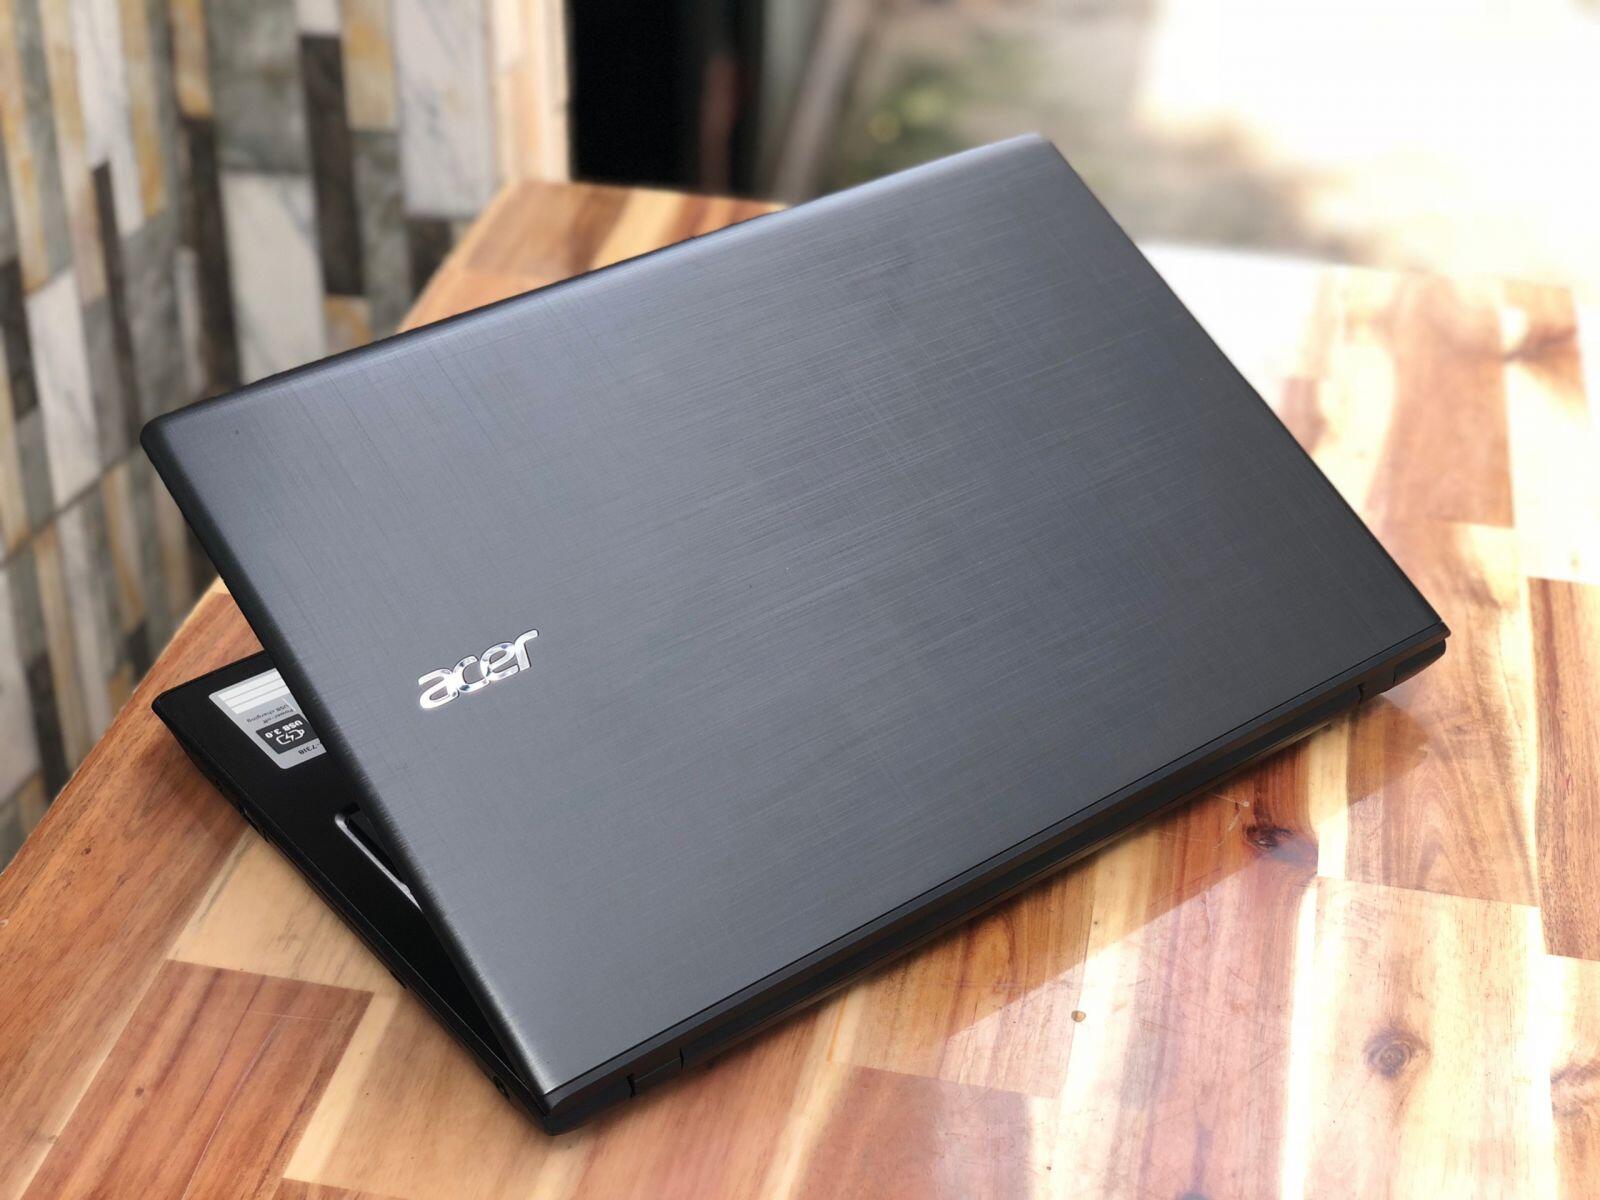 Acer Aspire E5-576G-81GD/ Core i7 / 8th Gen/ Ram12 GB/ HHD 500G / VGA 2G / Màn Hình 15.6 FHD